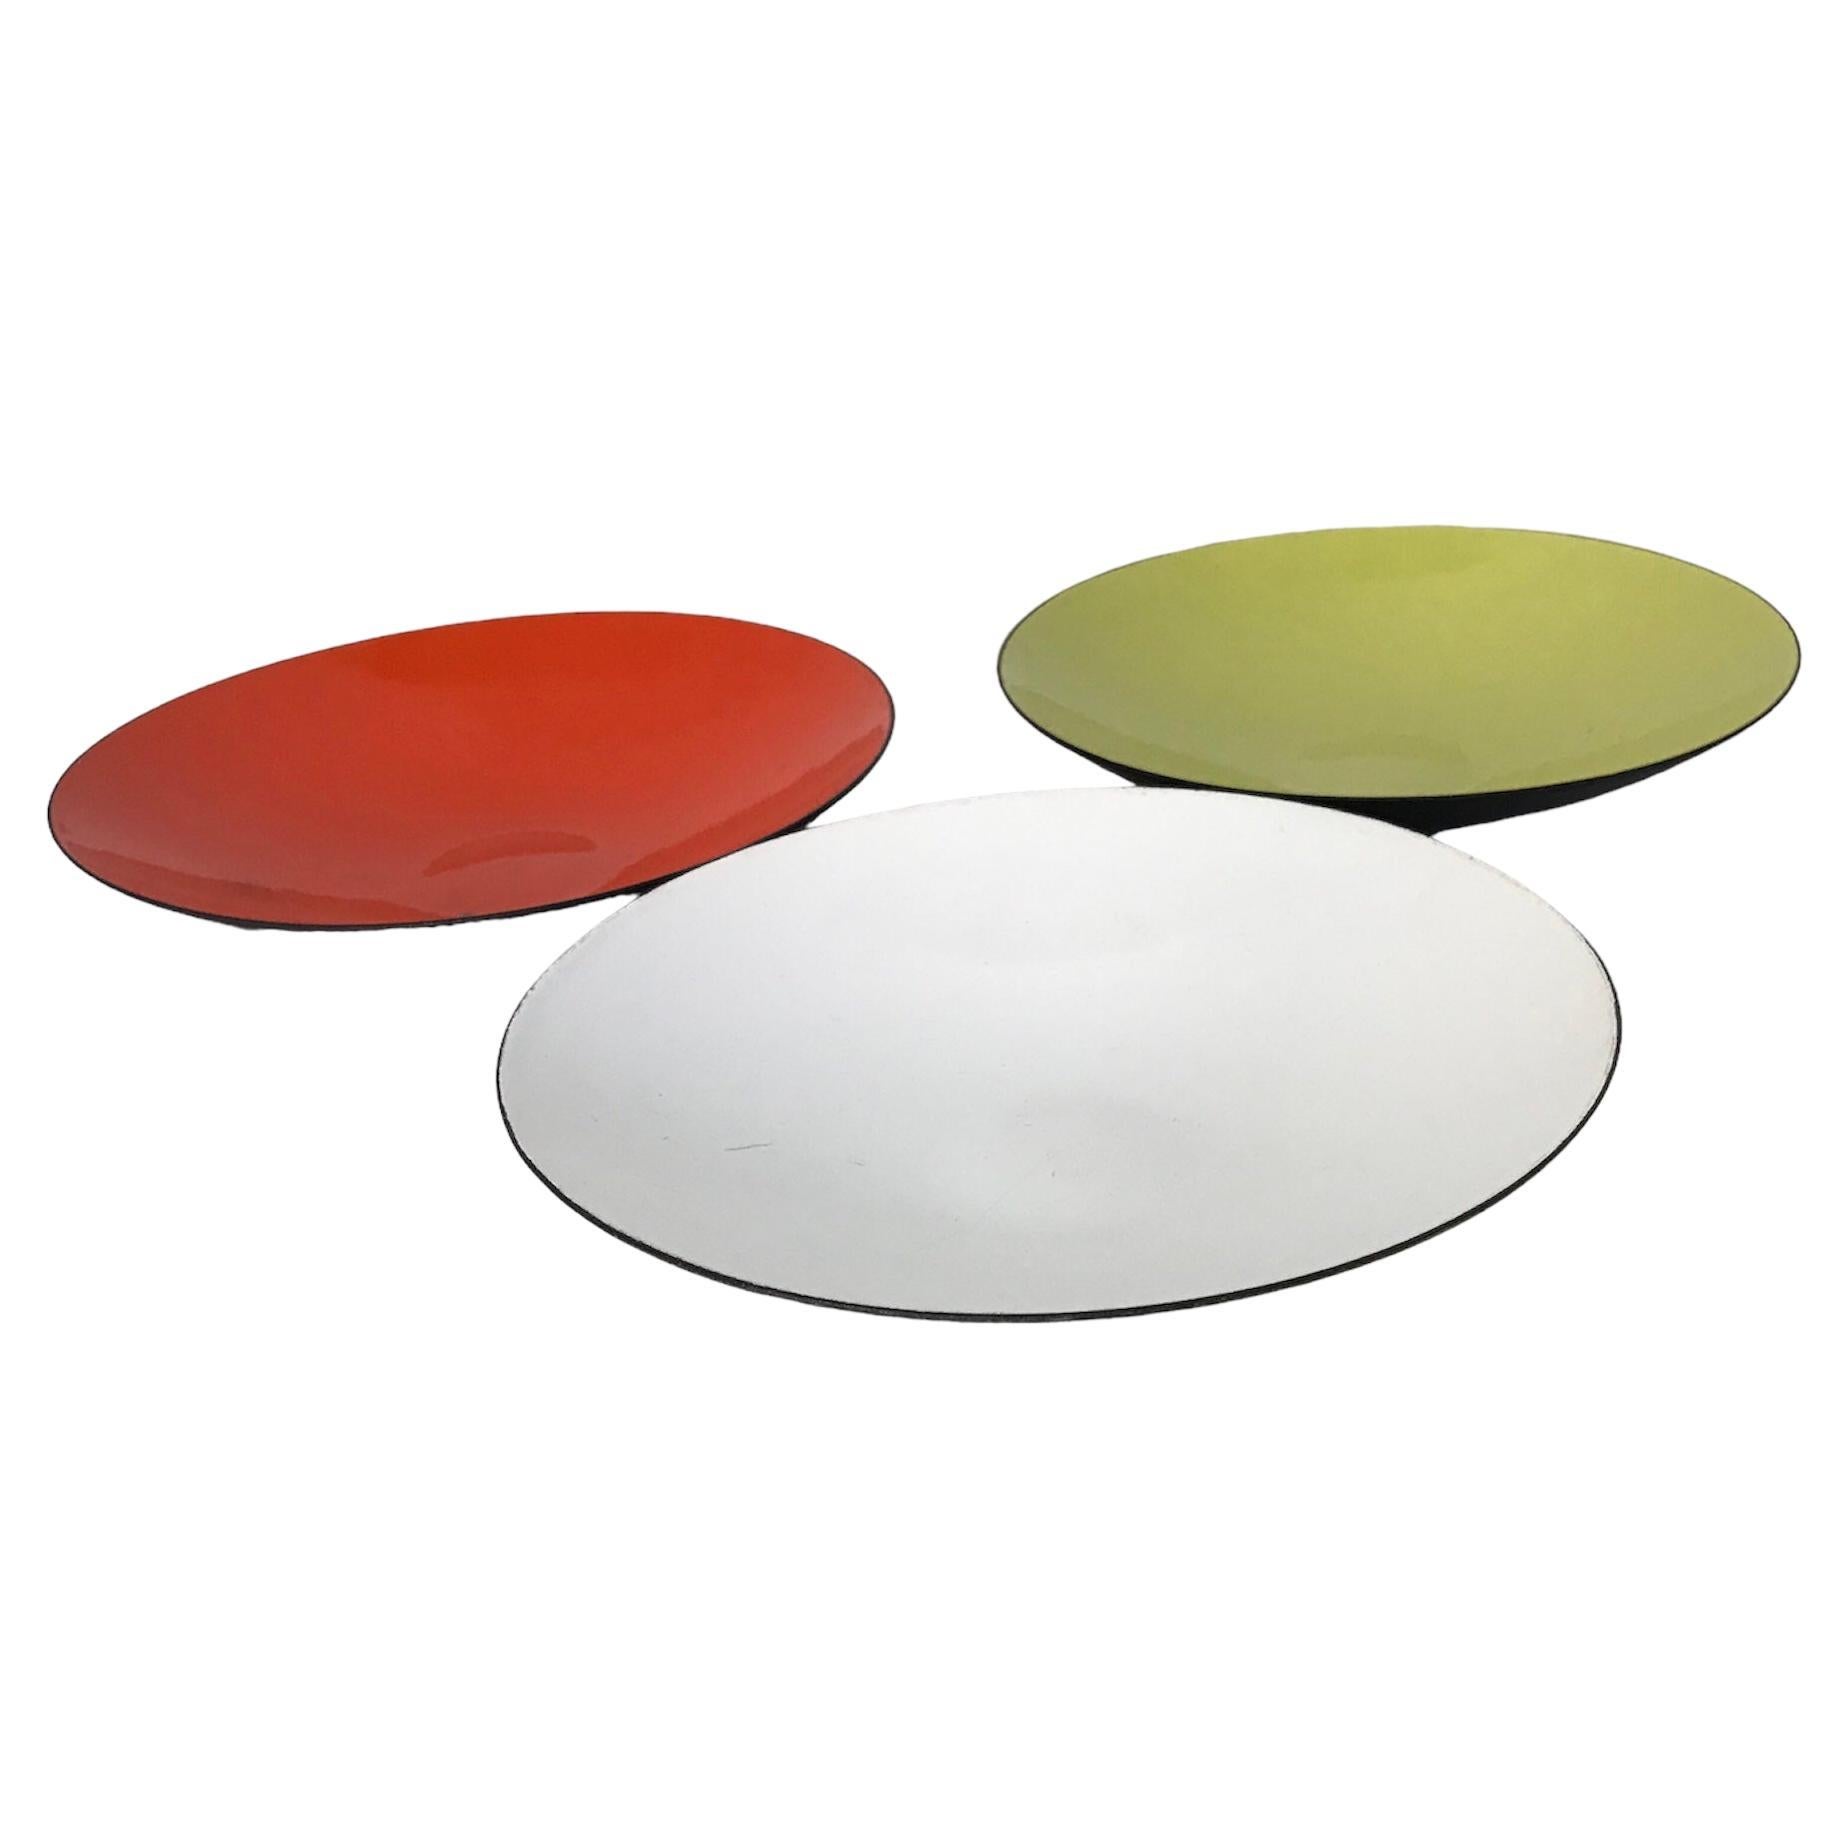 Ensemble de 3 plats Krenit, conçus par Herbert Krenchel dans les années 1950, d'une hauteur de 1,25 pouce et d'un diamètre de 6,5 pouces, commercialisés par Torben Ørskov au Danemark.  Un exemplaire de chaque - intérieur blanc, vert citron et rouge